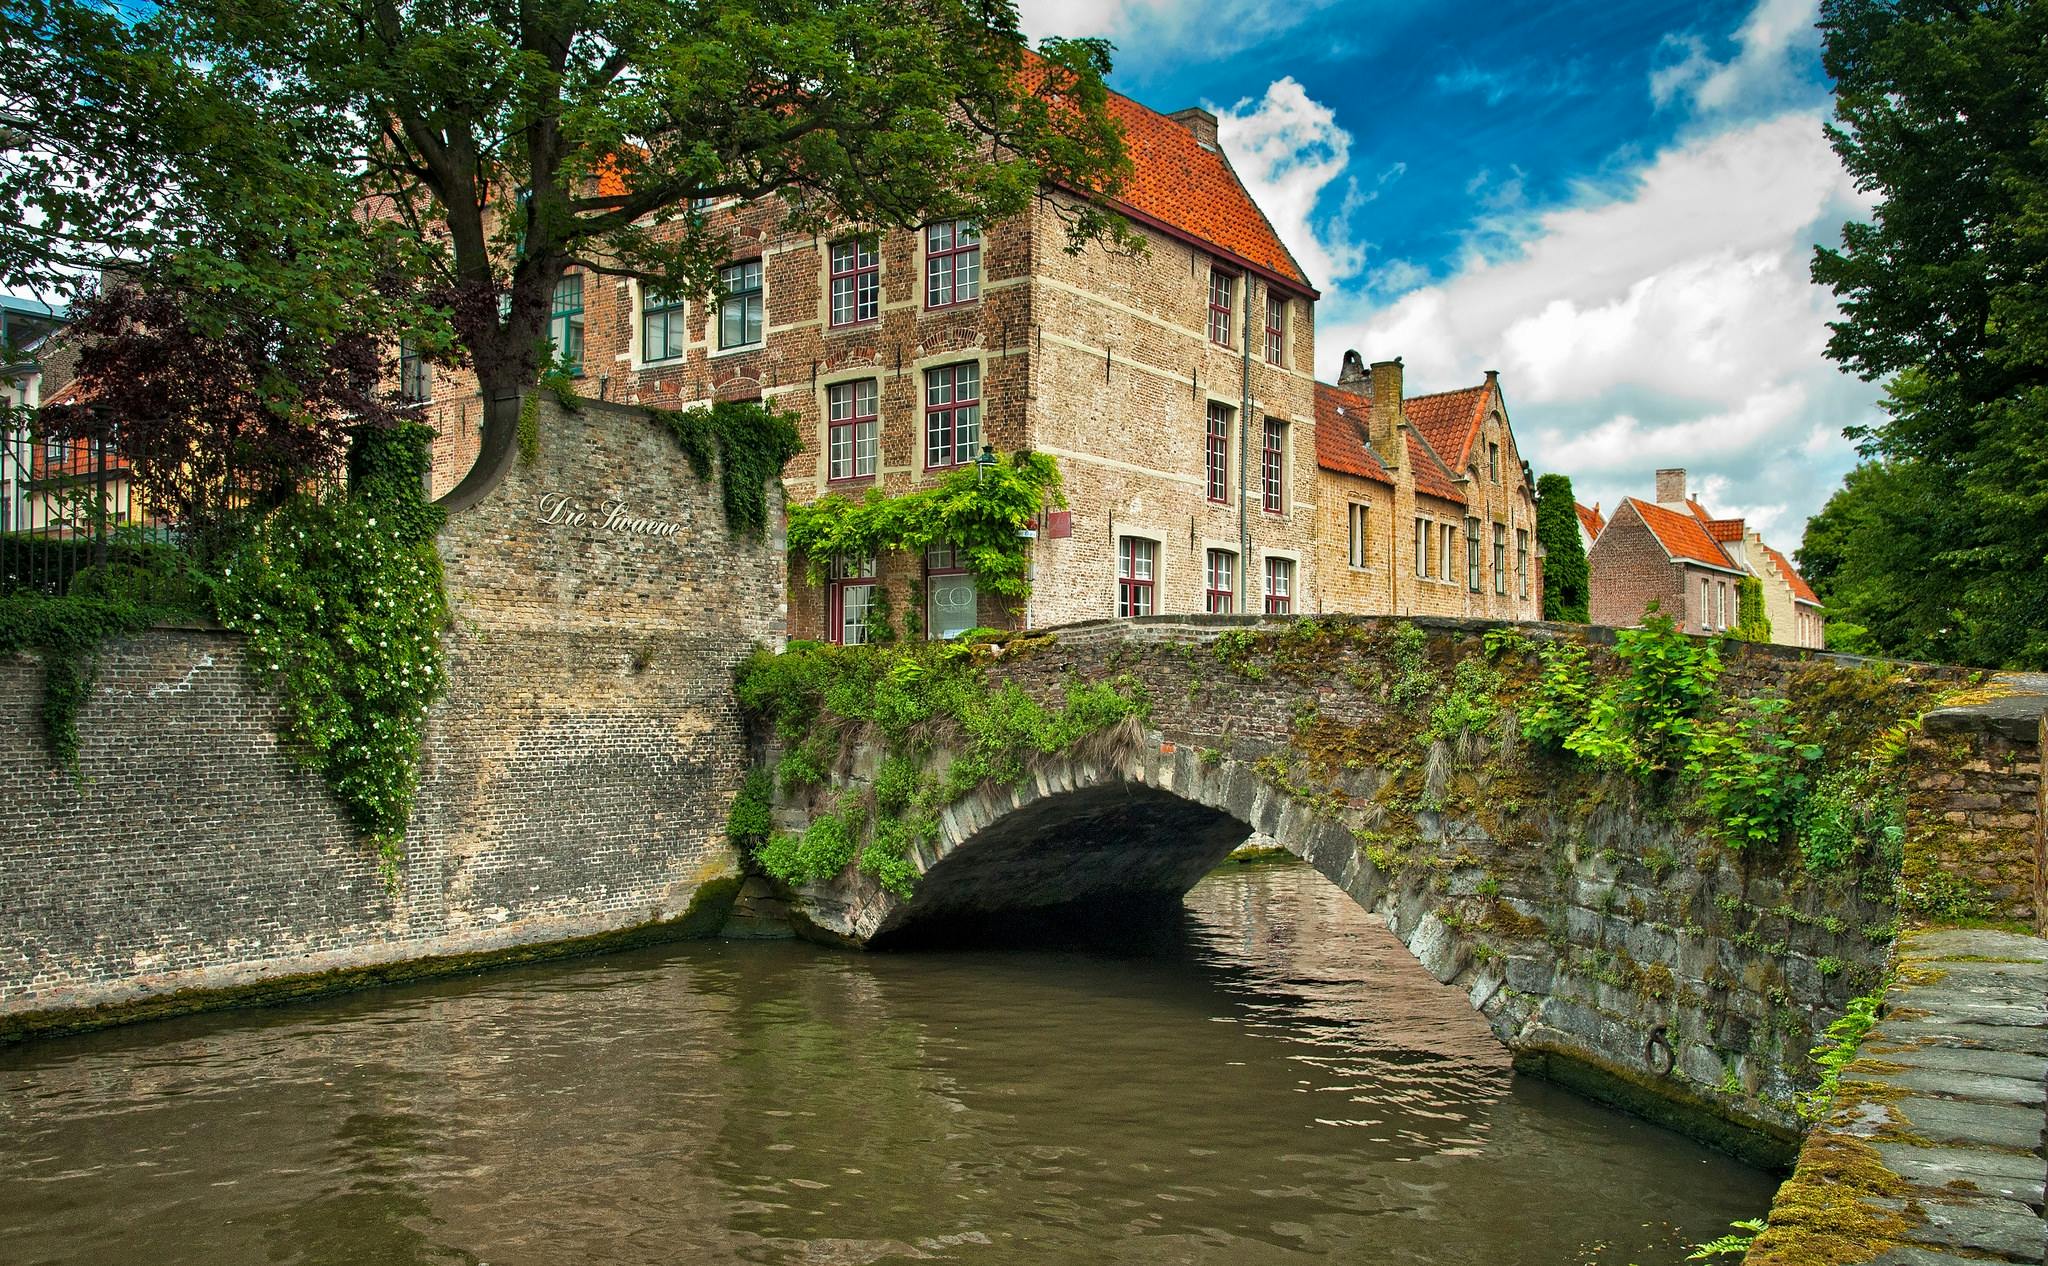 Excursão a Bruges saindo de Amsterdã